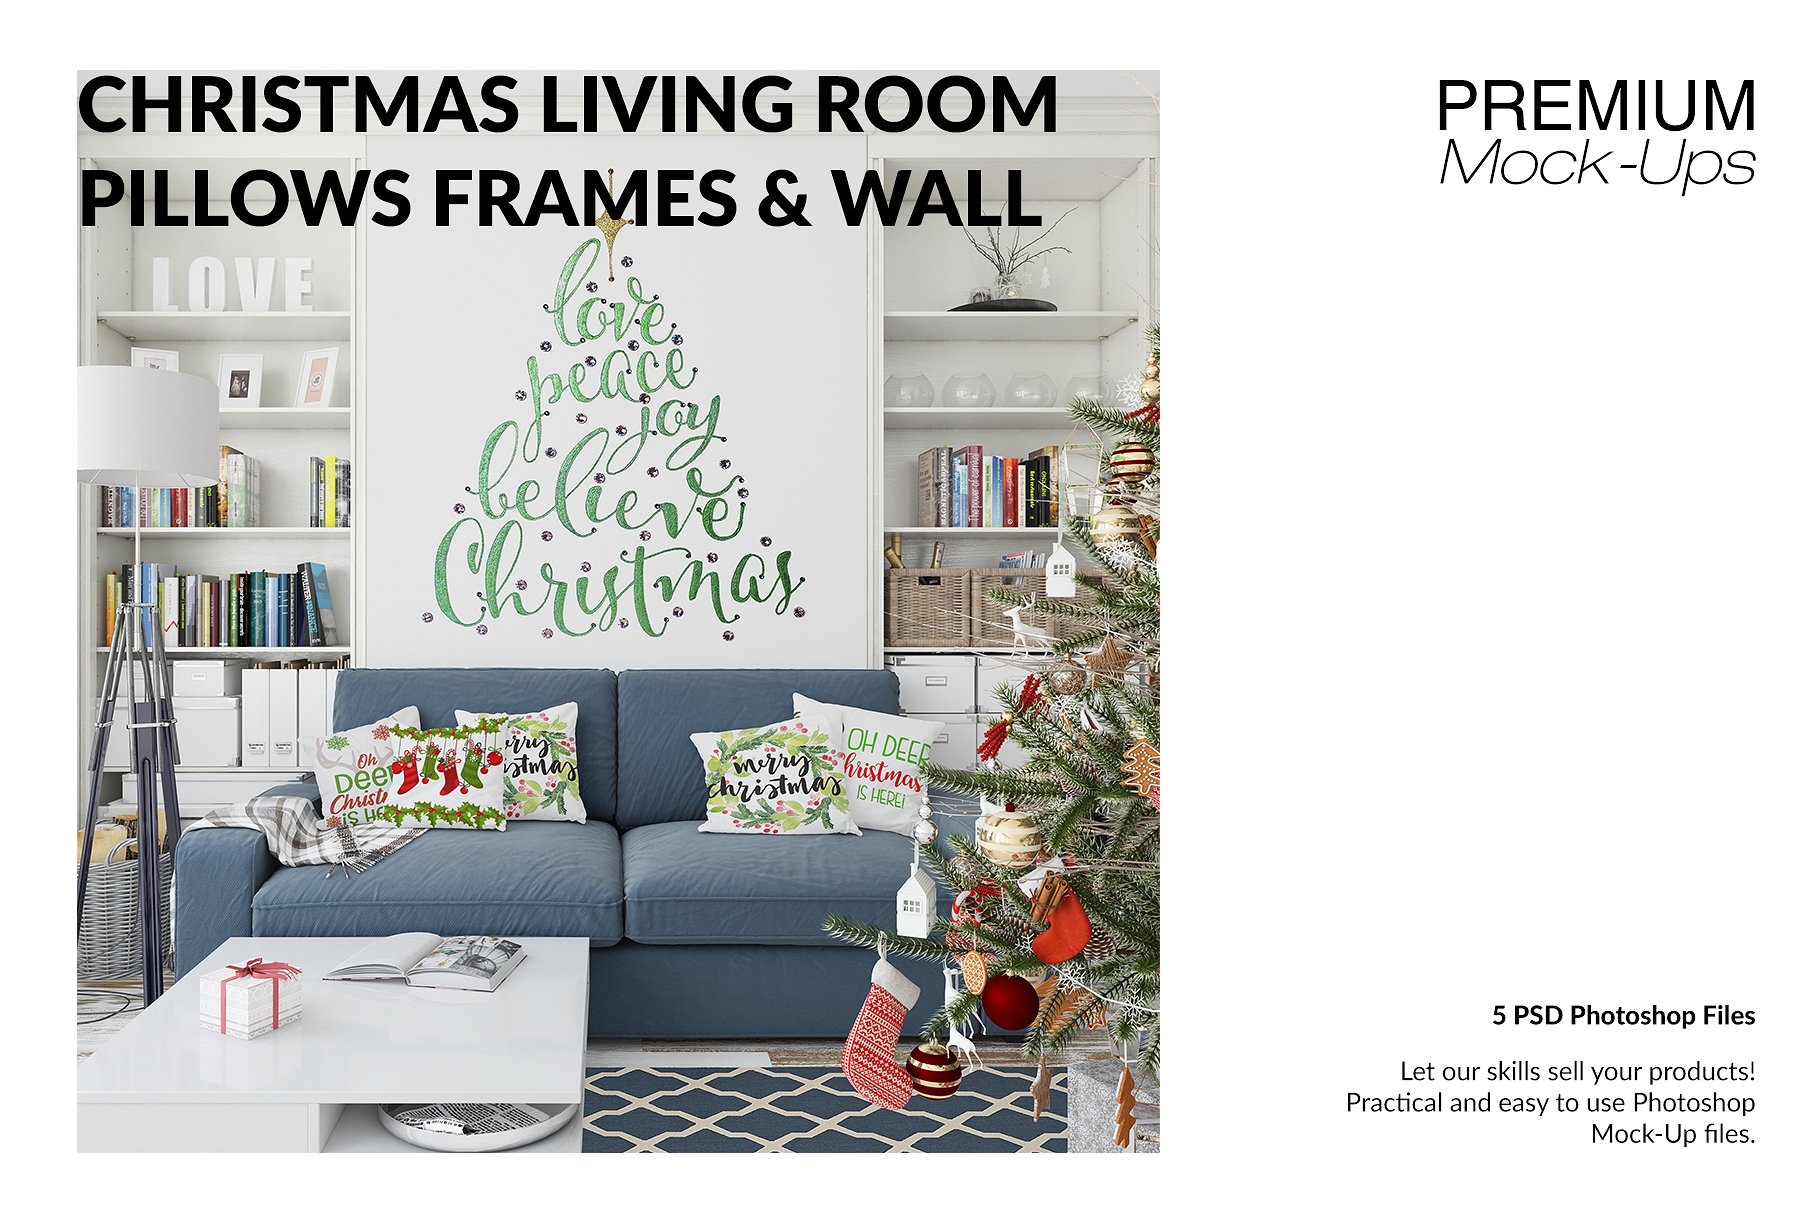 圣诞节客厅装饰展示样机套装 Christmas Living Room Set [psd,jpg]插图